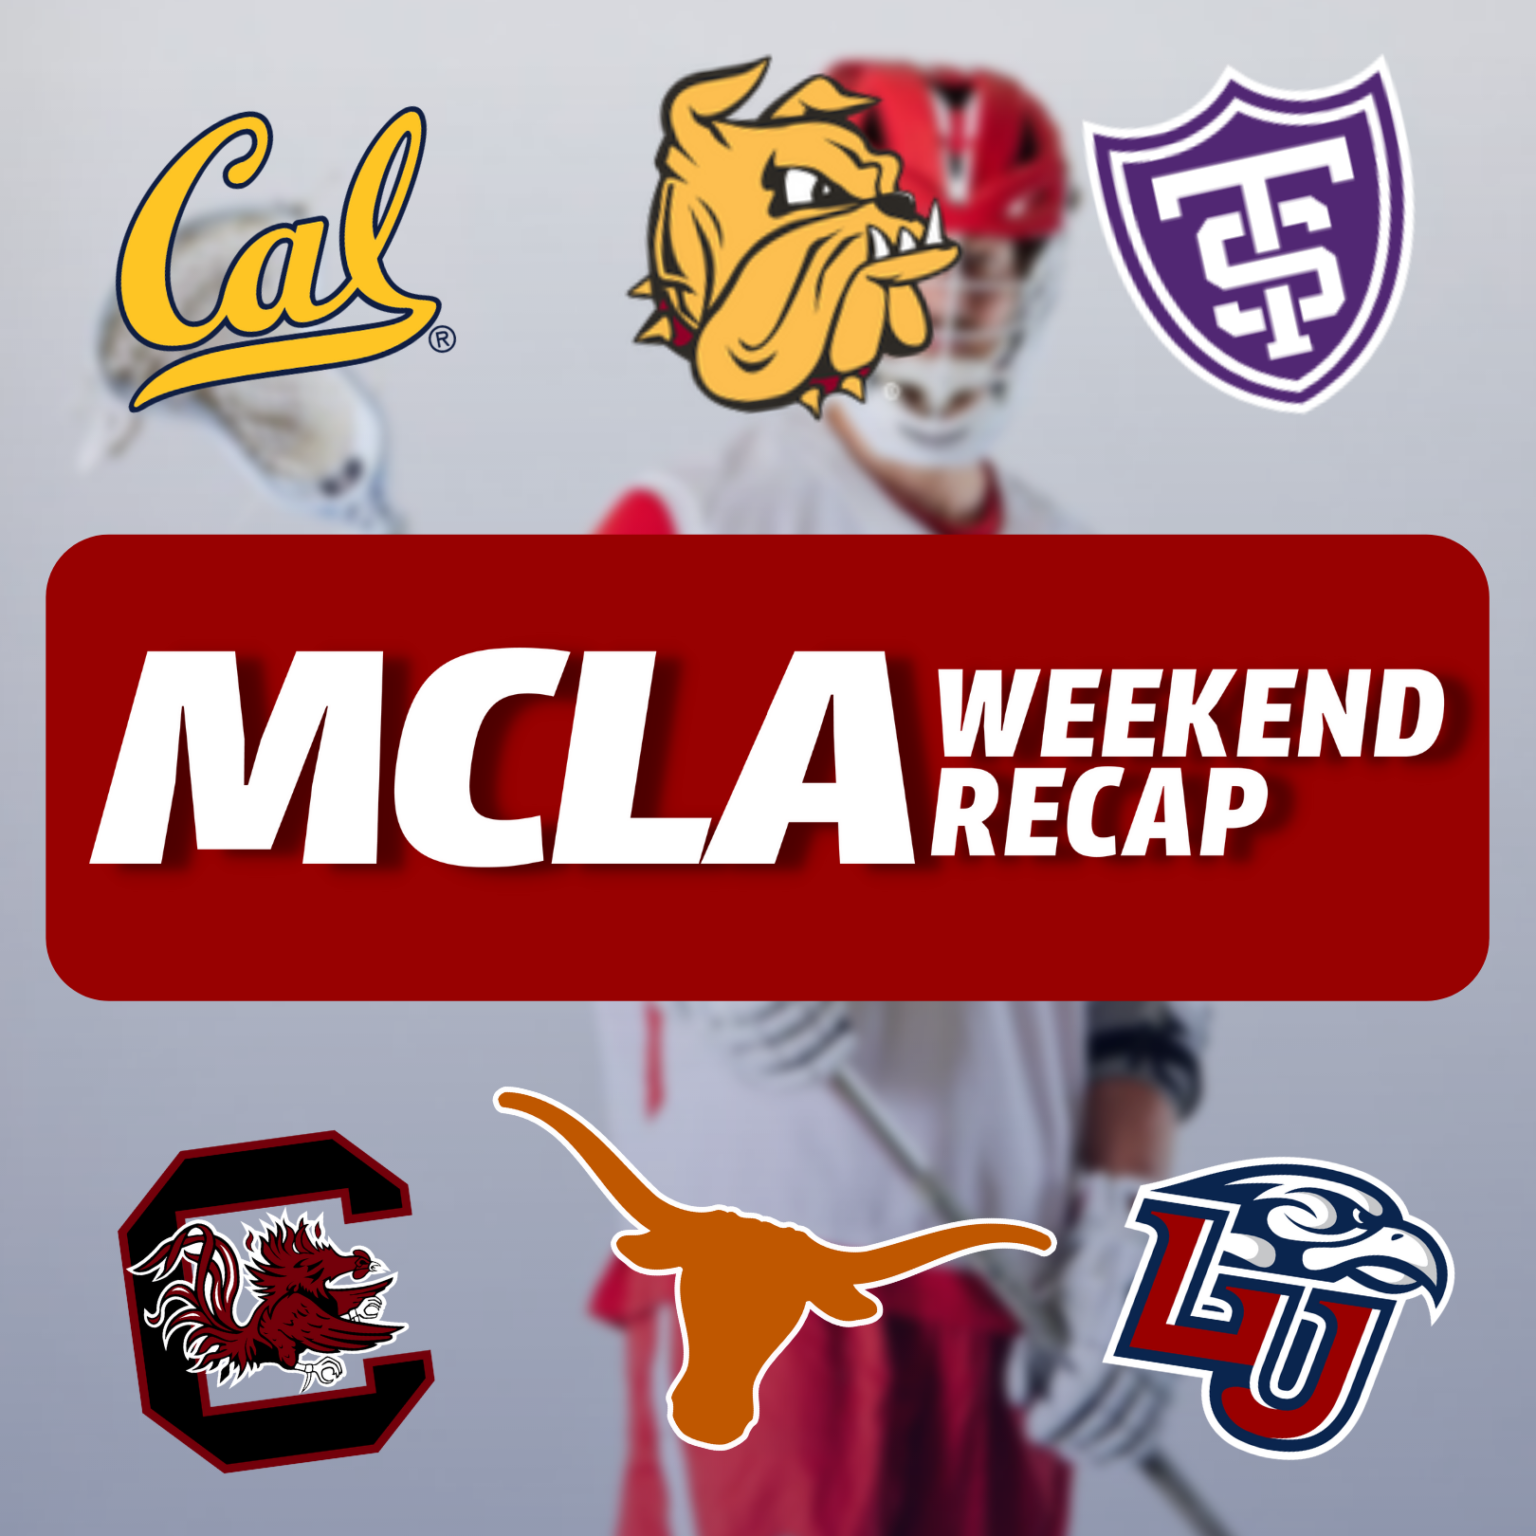 MCLA on ESPN: MCLA Week 3 Recap - Lacrosse All Stars